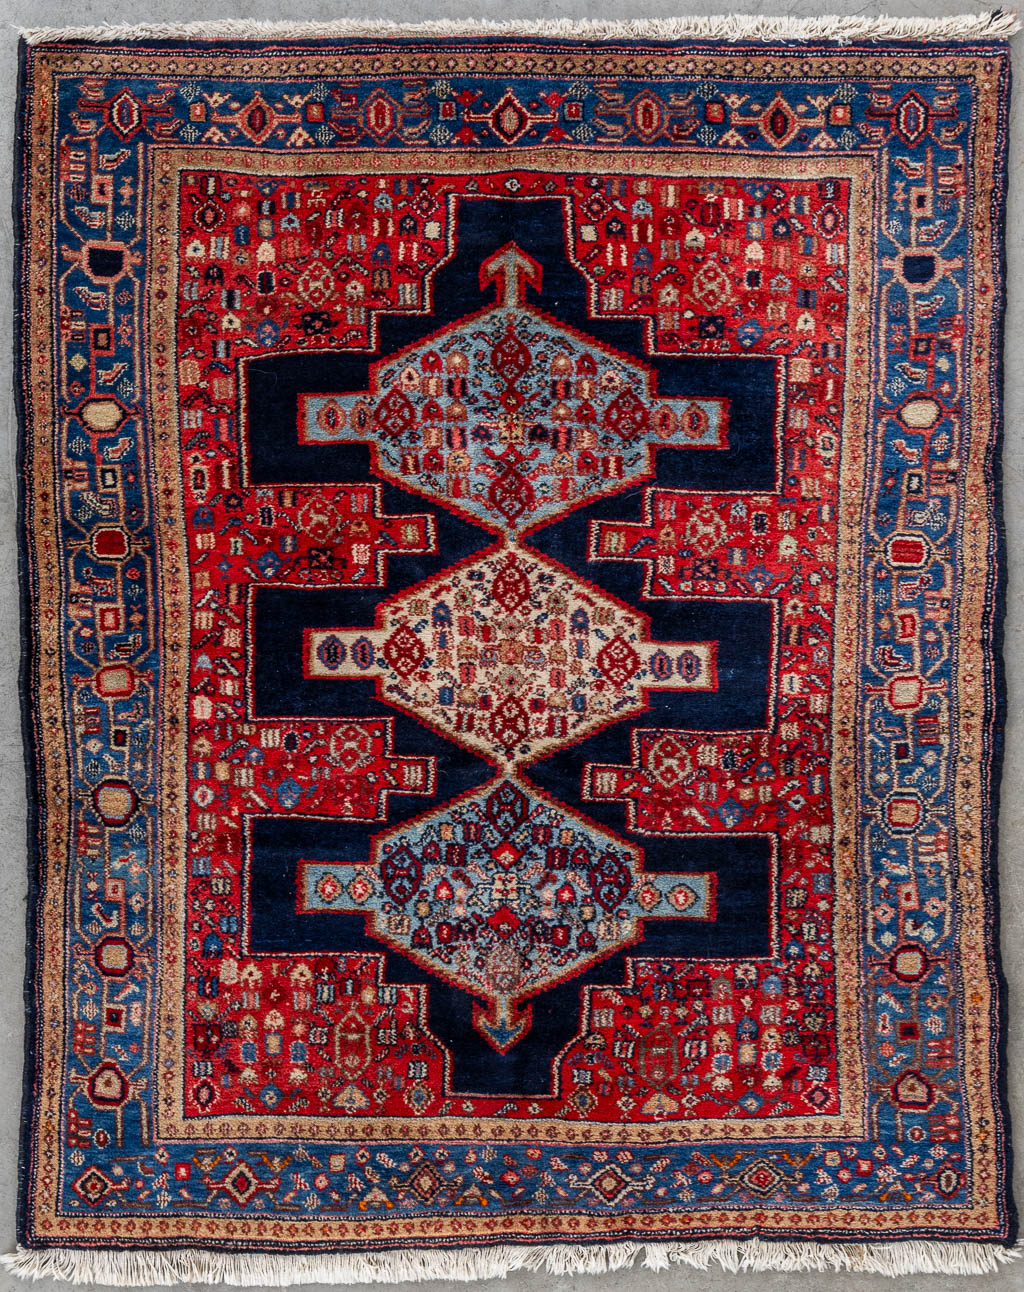 Lot 207 Een Oosters, handgeknoopt tapijt, Senneh Iran. (L:157 x W:126 cm)